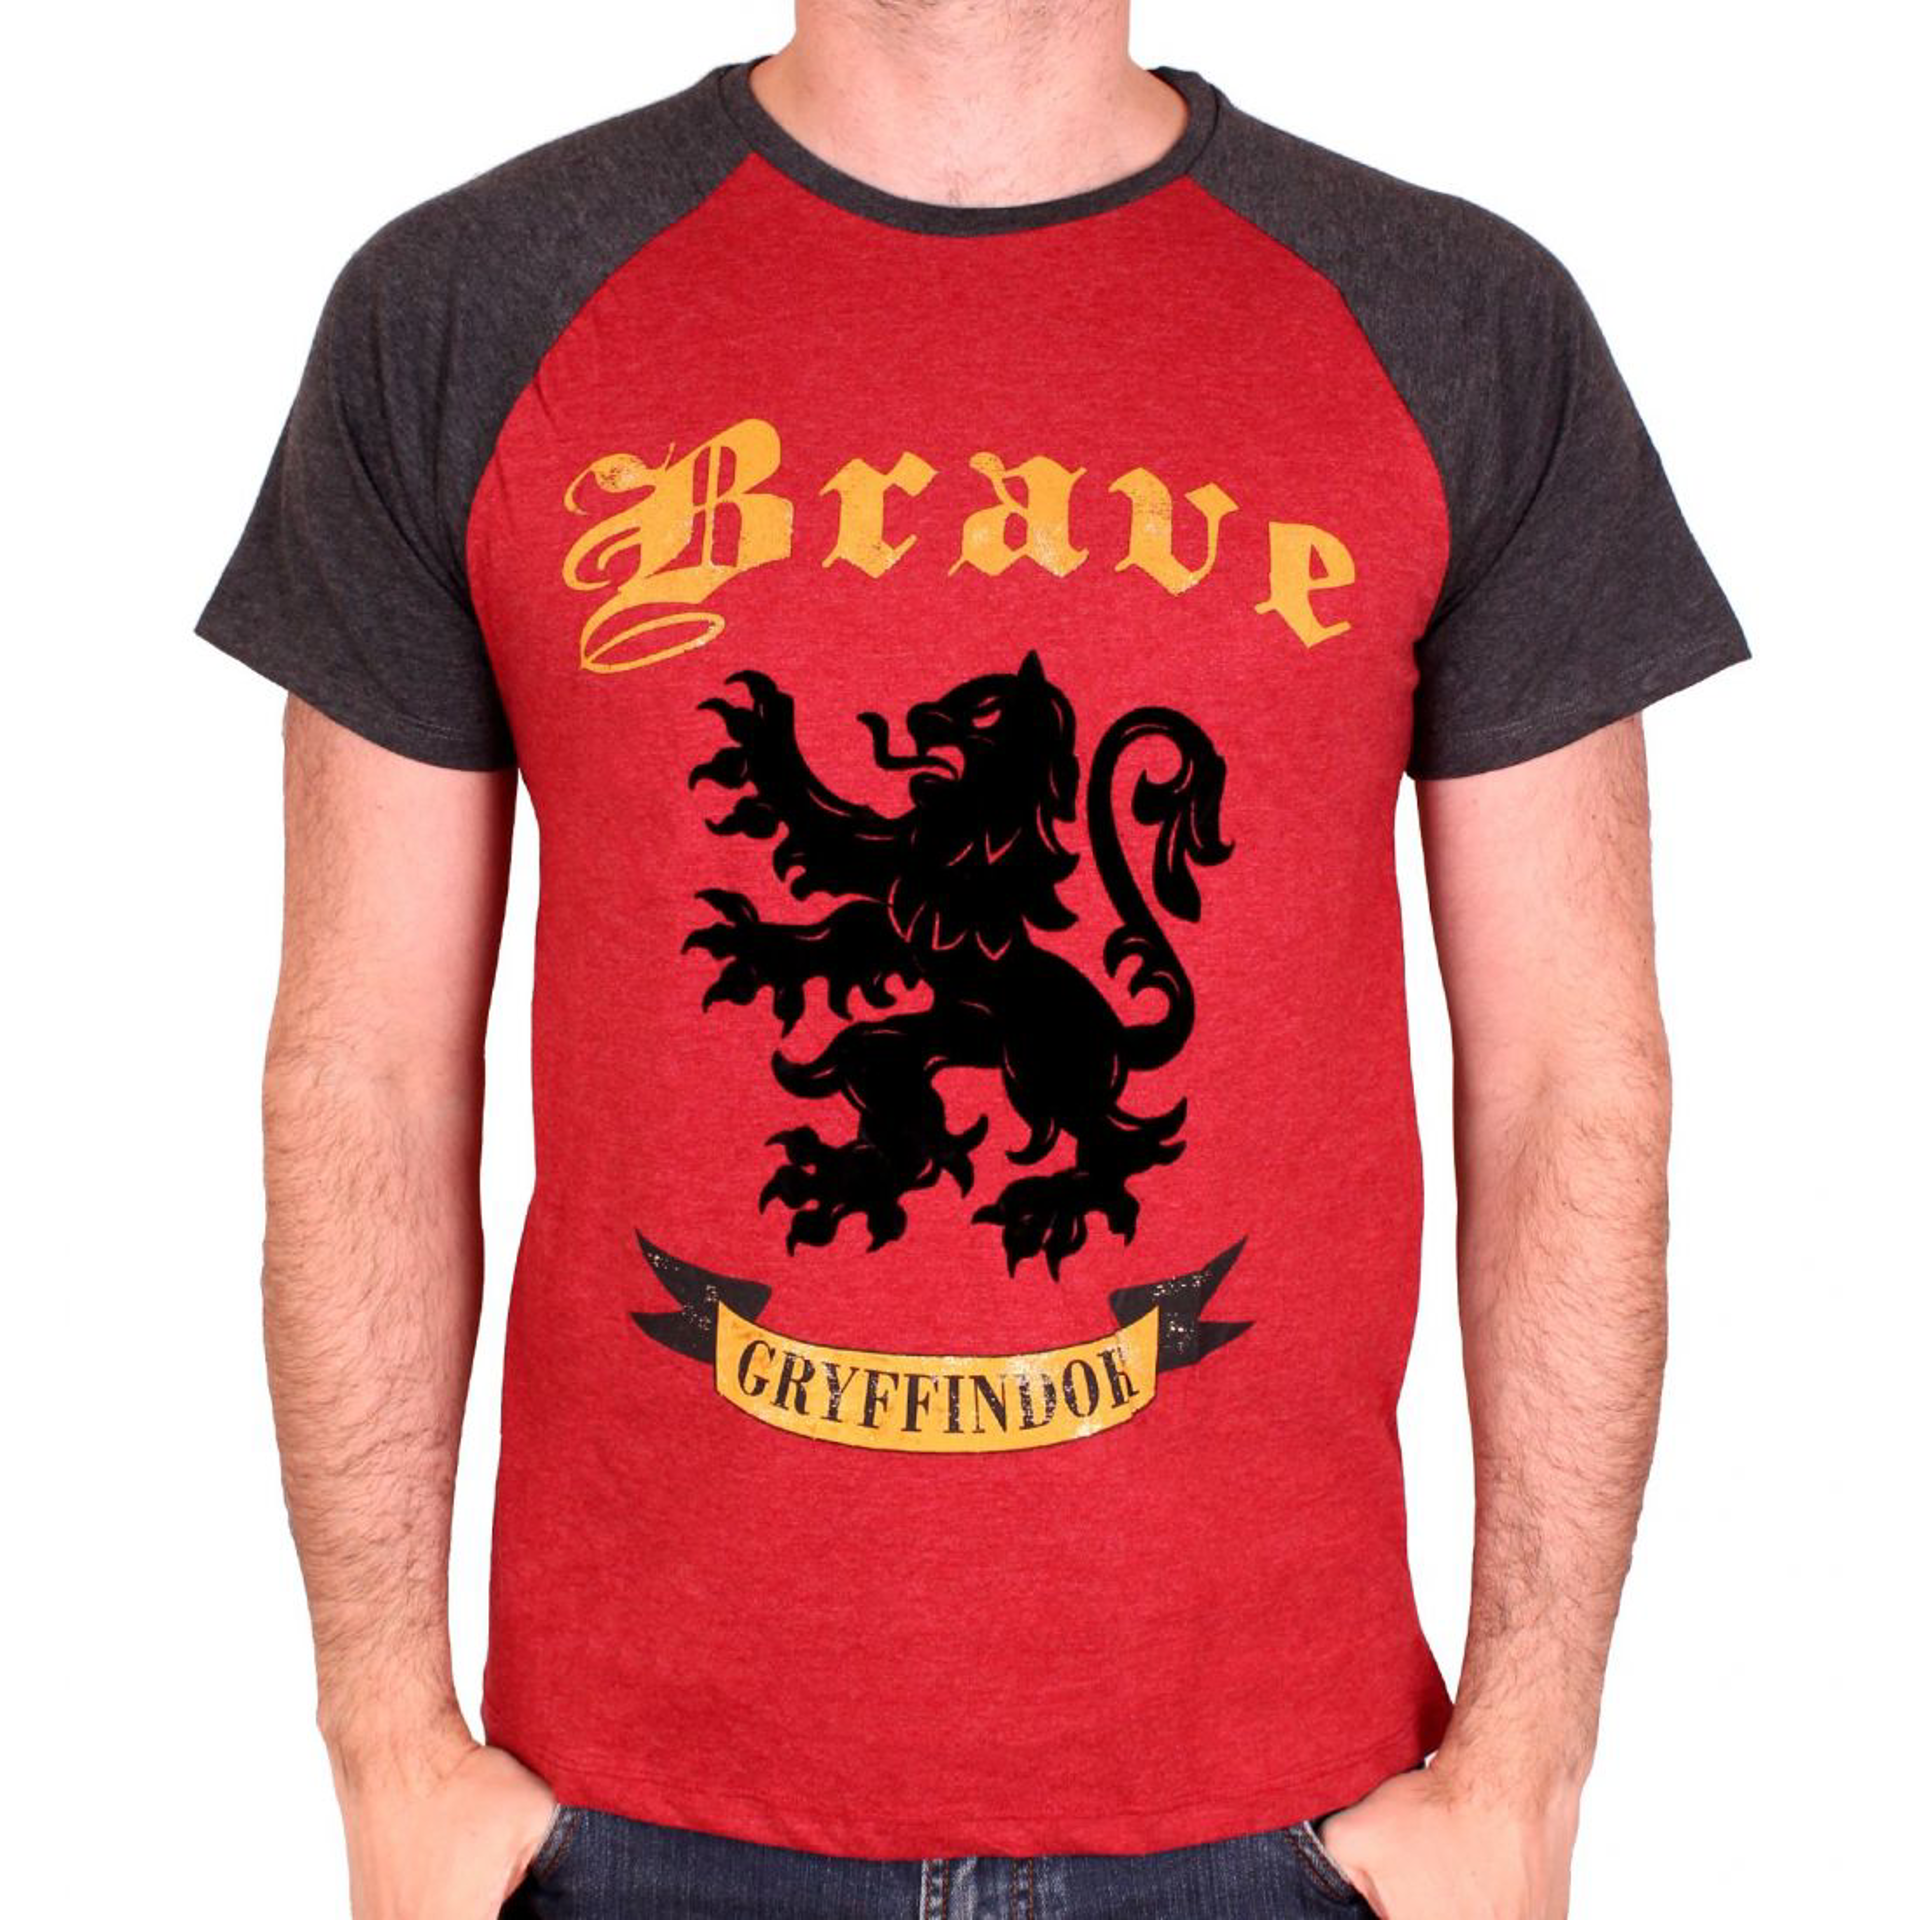 Harry Potter - Brave Gryffindor Crest Red/Anthracite T-Shirt - M